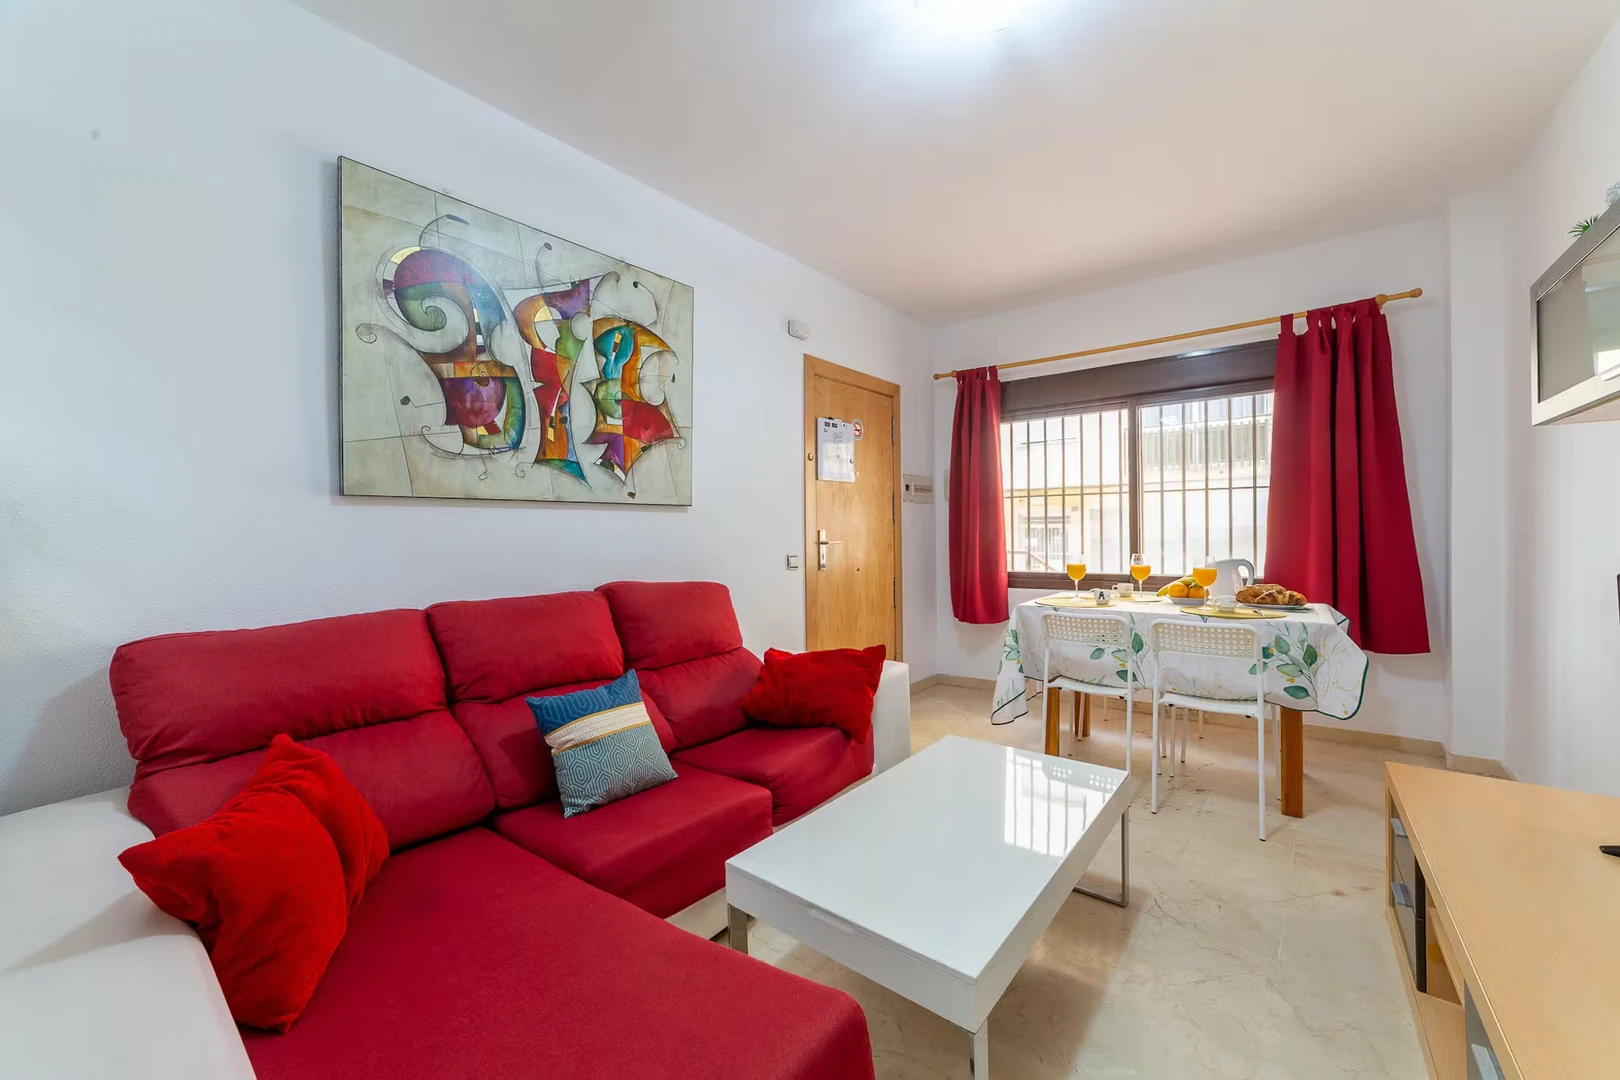 Modern and bright flat in Almeria